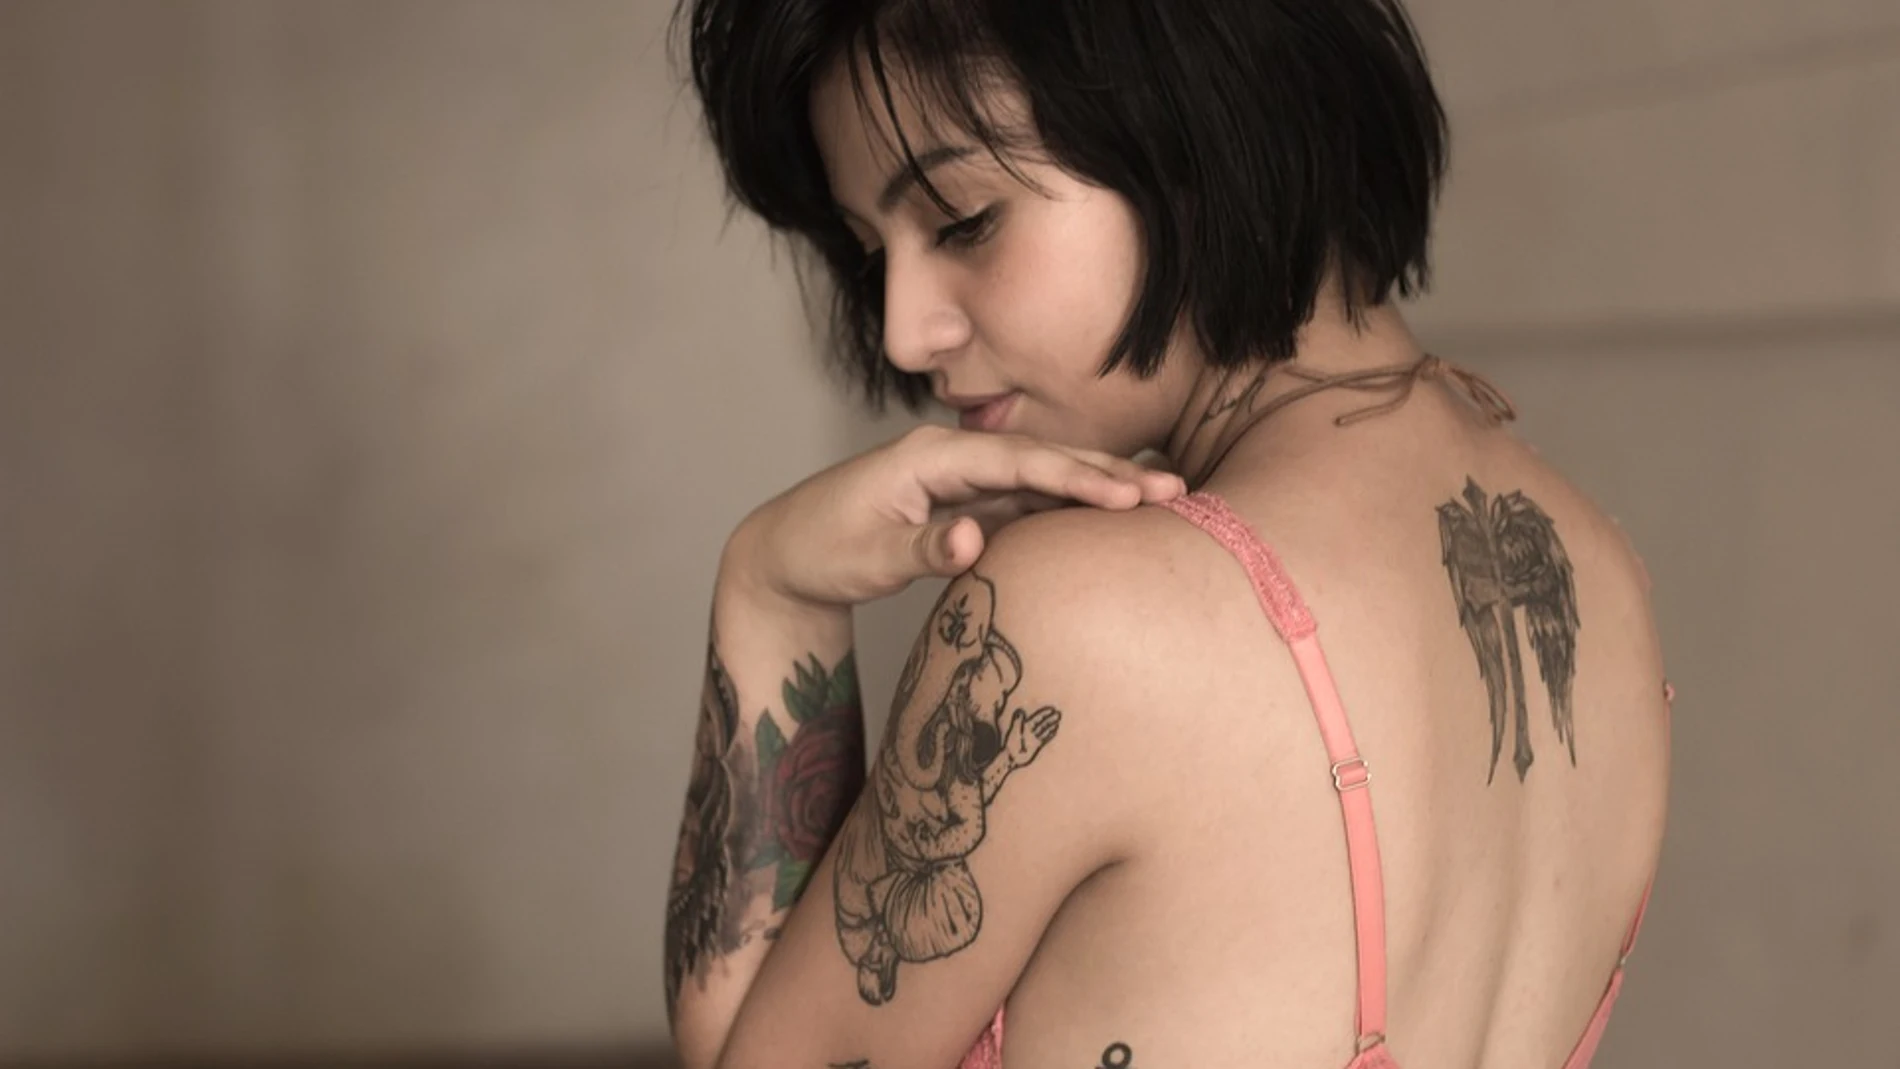 Actualmente y gracias a la moda, pero sobre todo a las regulaciones que han hecho que esto sea más seguro, tatuarse se ha convertido en algo muy habitual.